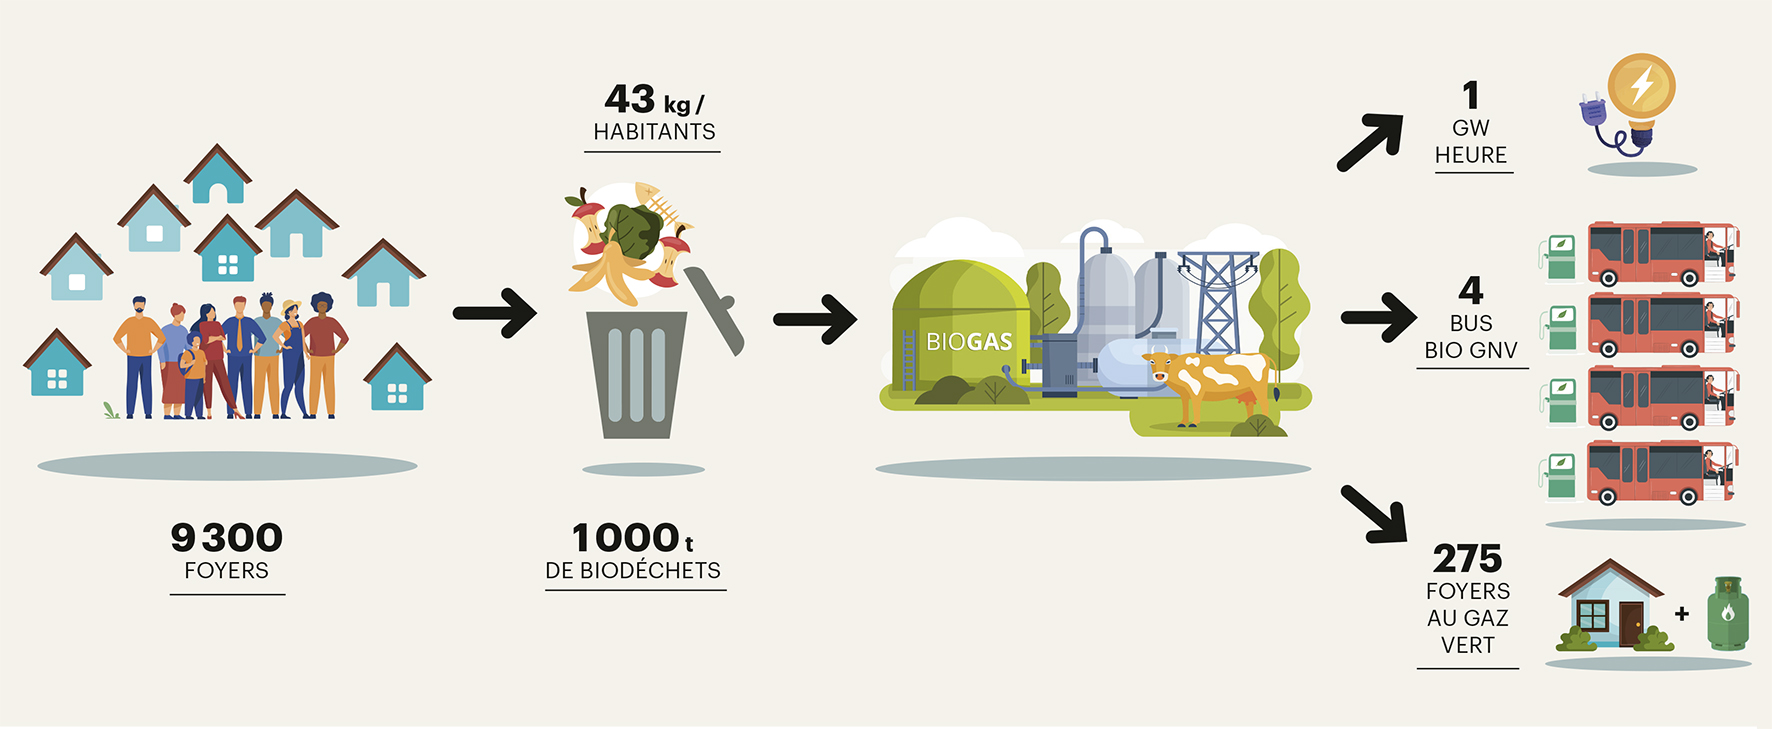 Infographie sur le recyclage des déchets organiques en territoire urbain - biodéchets